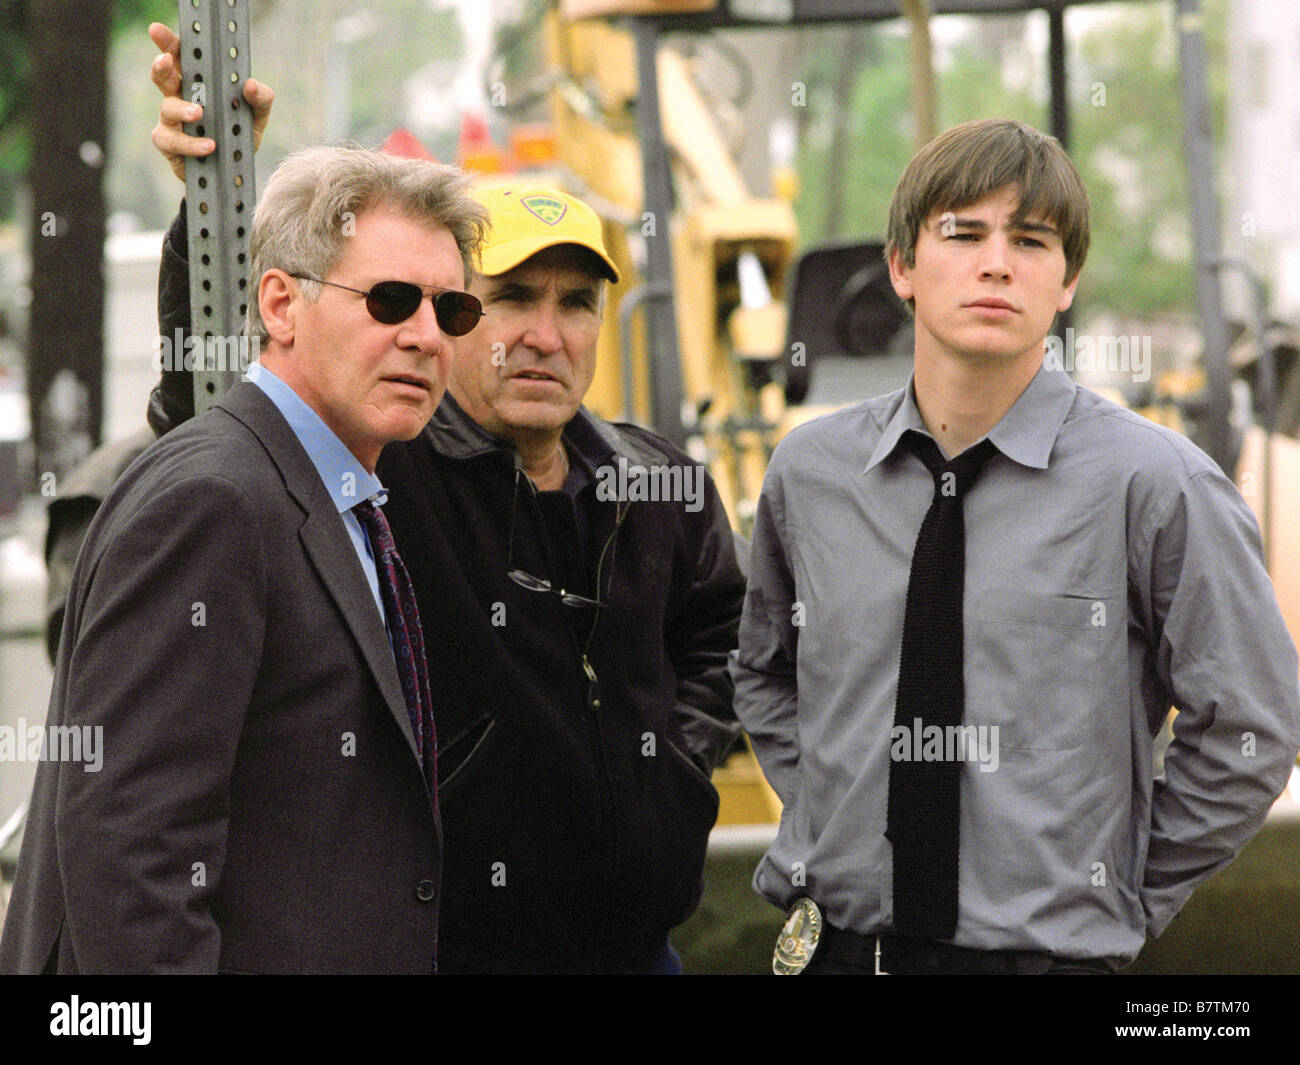 Hollywood Homicide Anno: 2003 USA Josh Hartnett, Harrison Ford, Ron Shelton Direttore:Ron Shelton immagine di scatto Foto Stock